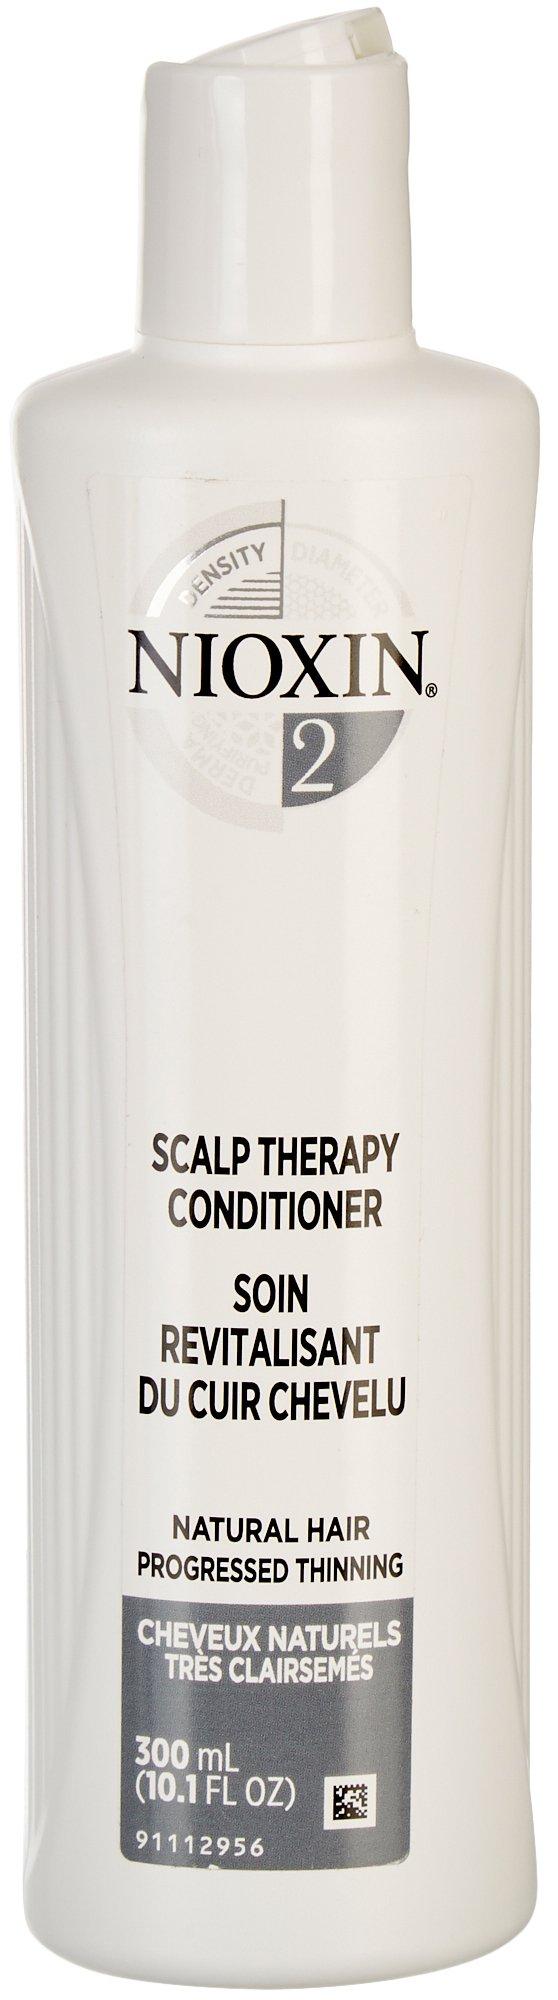 10.1 fl oz. No.2 Scalp Therapy Conditioner